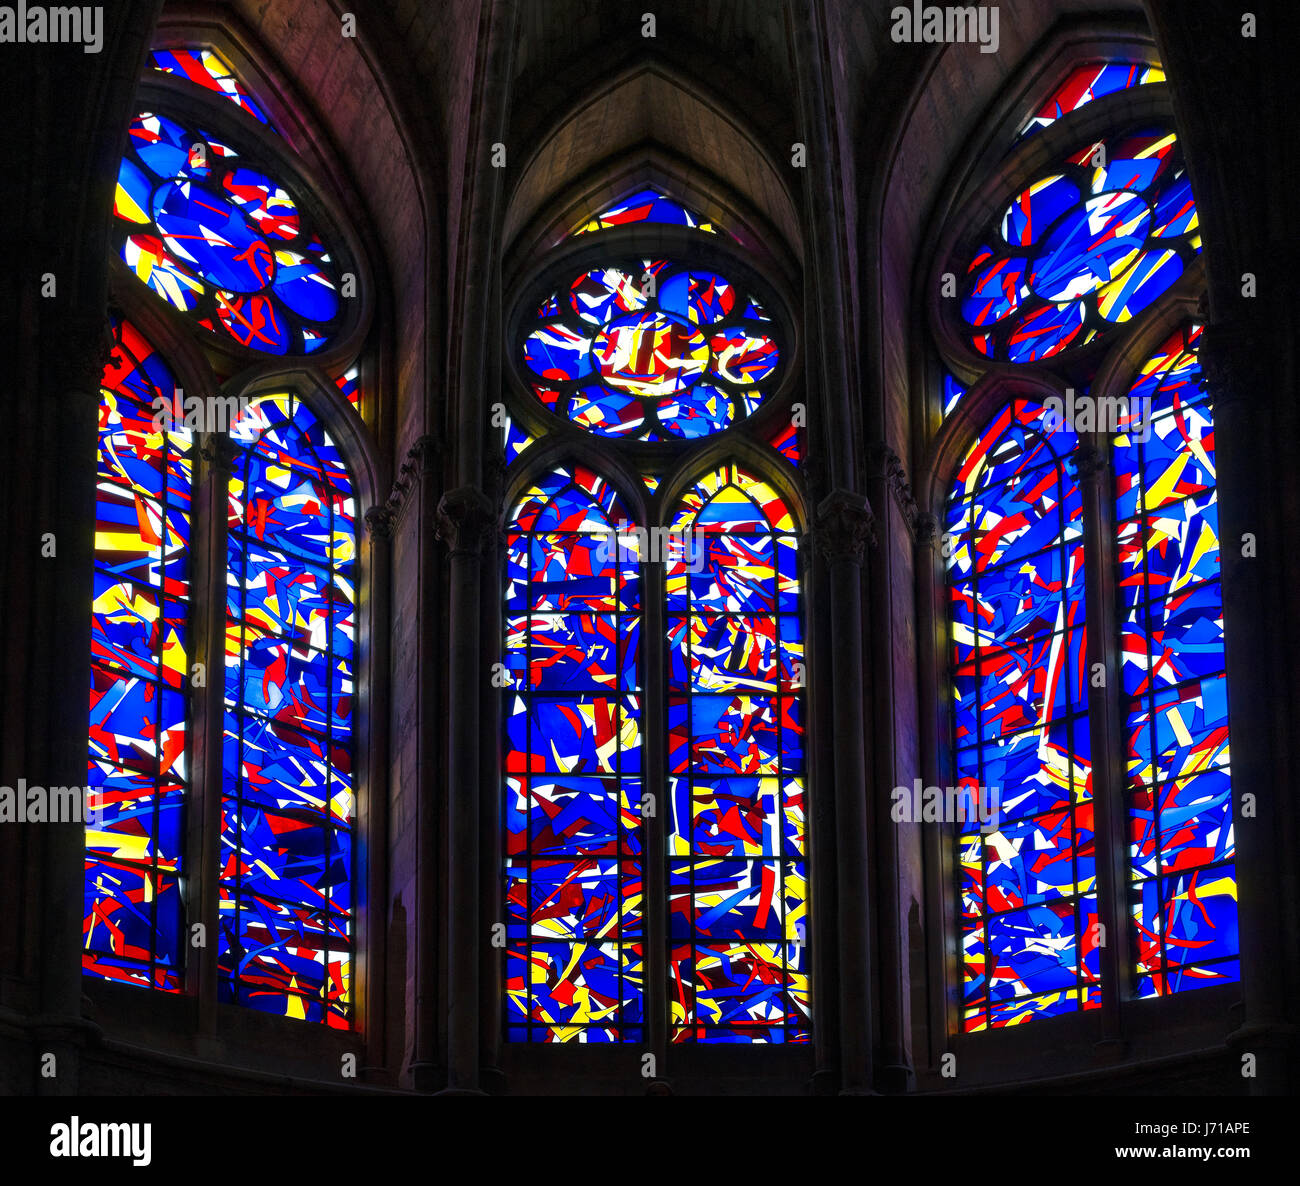 Vitraux modernes par Imi Knoebel à la Cathédrale Notre Dame de Reims, Reims, France Banque D'Images